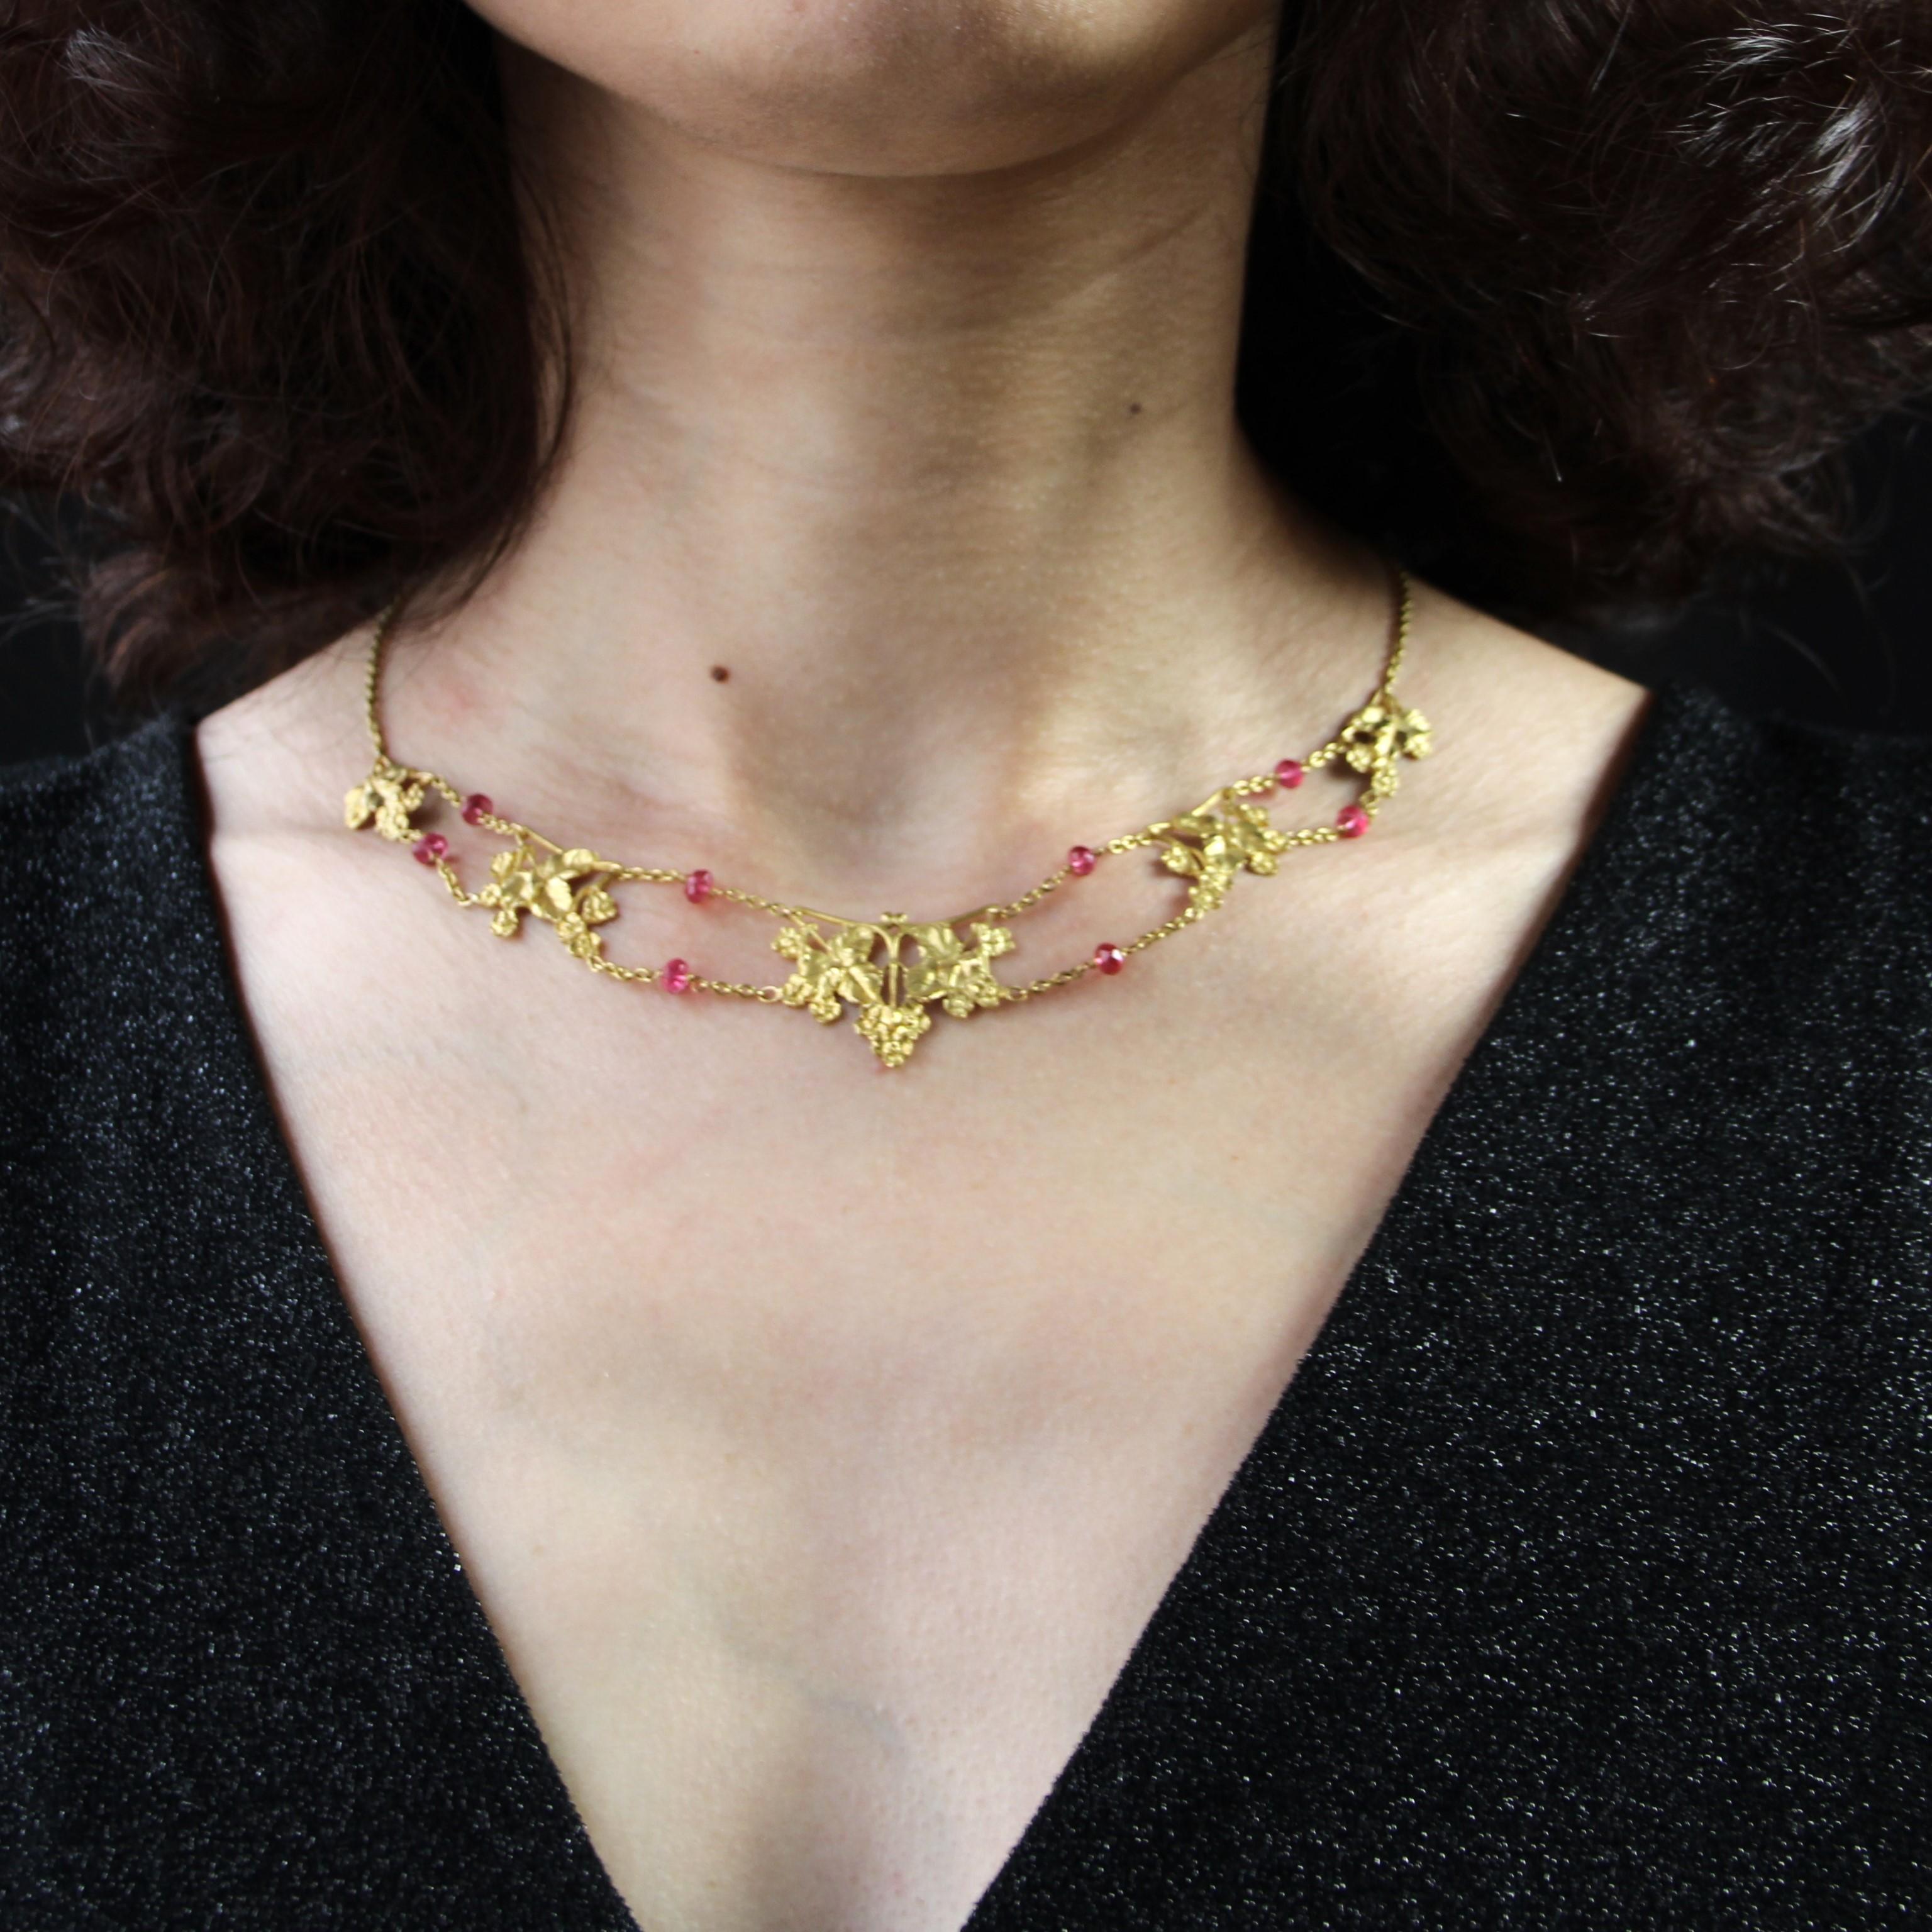 Halskette aus 18 Karat Gelbgold, Adlerkopfpunze.
Die schöne Golddrapierung besteht aus geschnitzten Efeublattmotiven, zwischen denen eine Doppelkette mit facettierten rosafarbenen Spinellperlen verläuft. Die Schließe ist ein Federring.
Gesamtlänge: